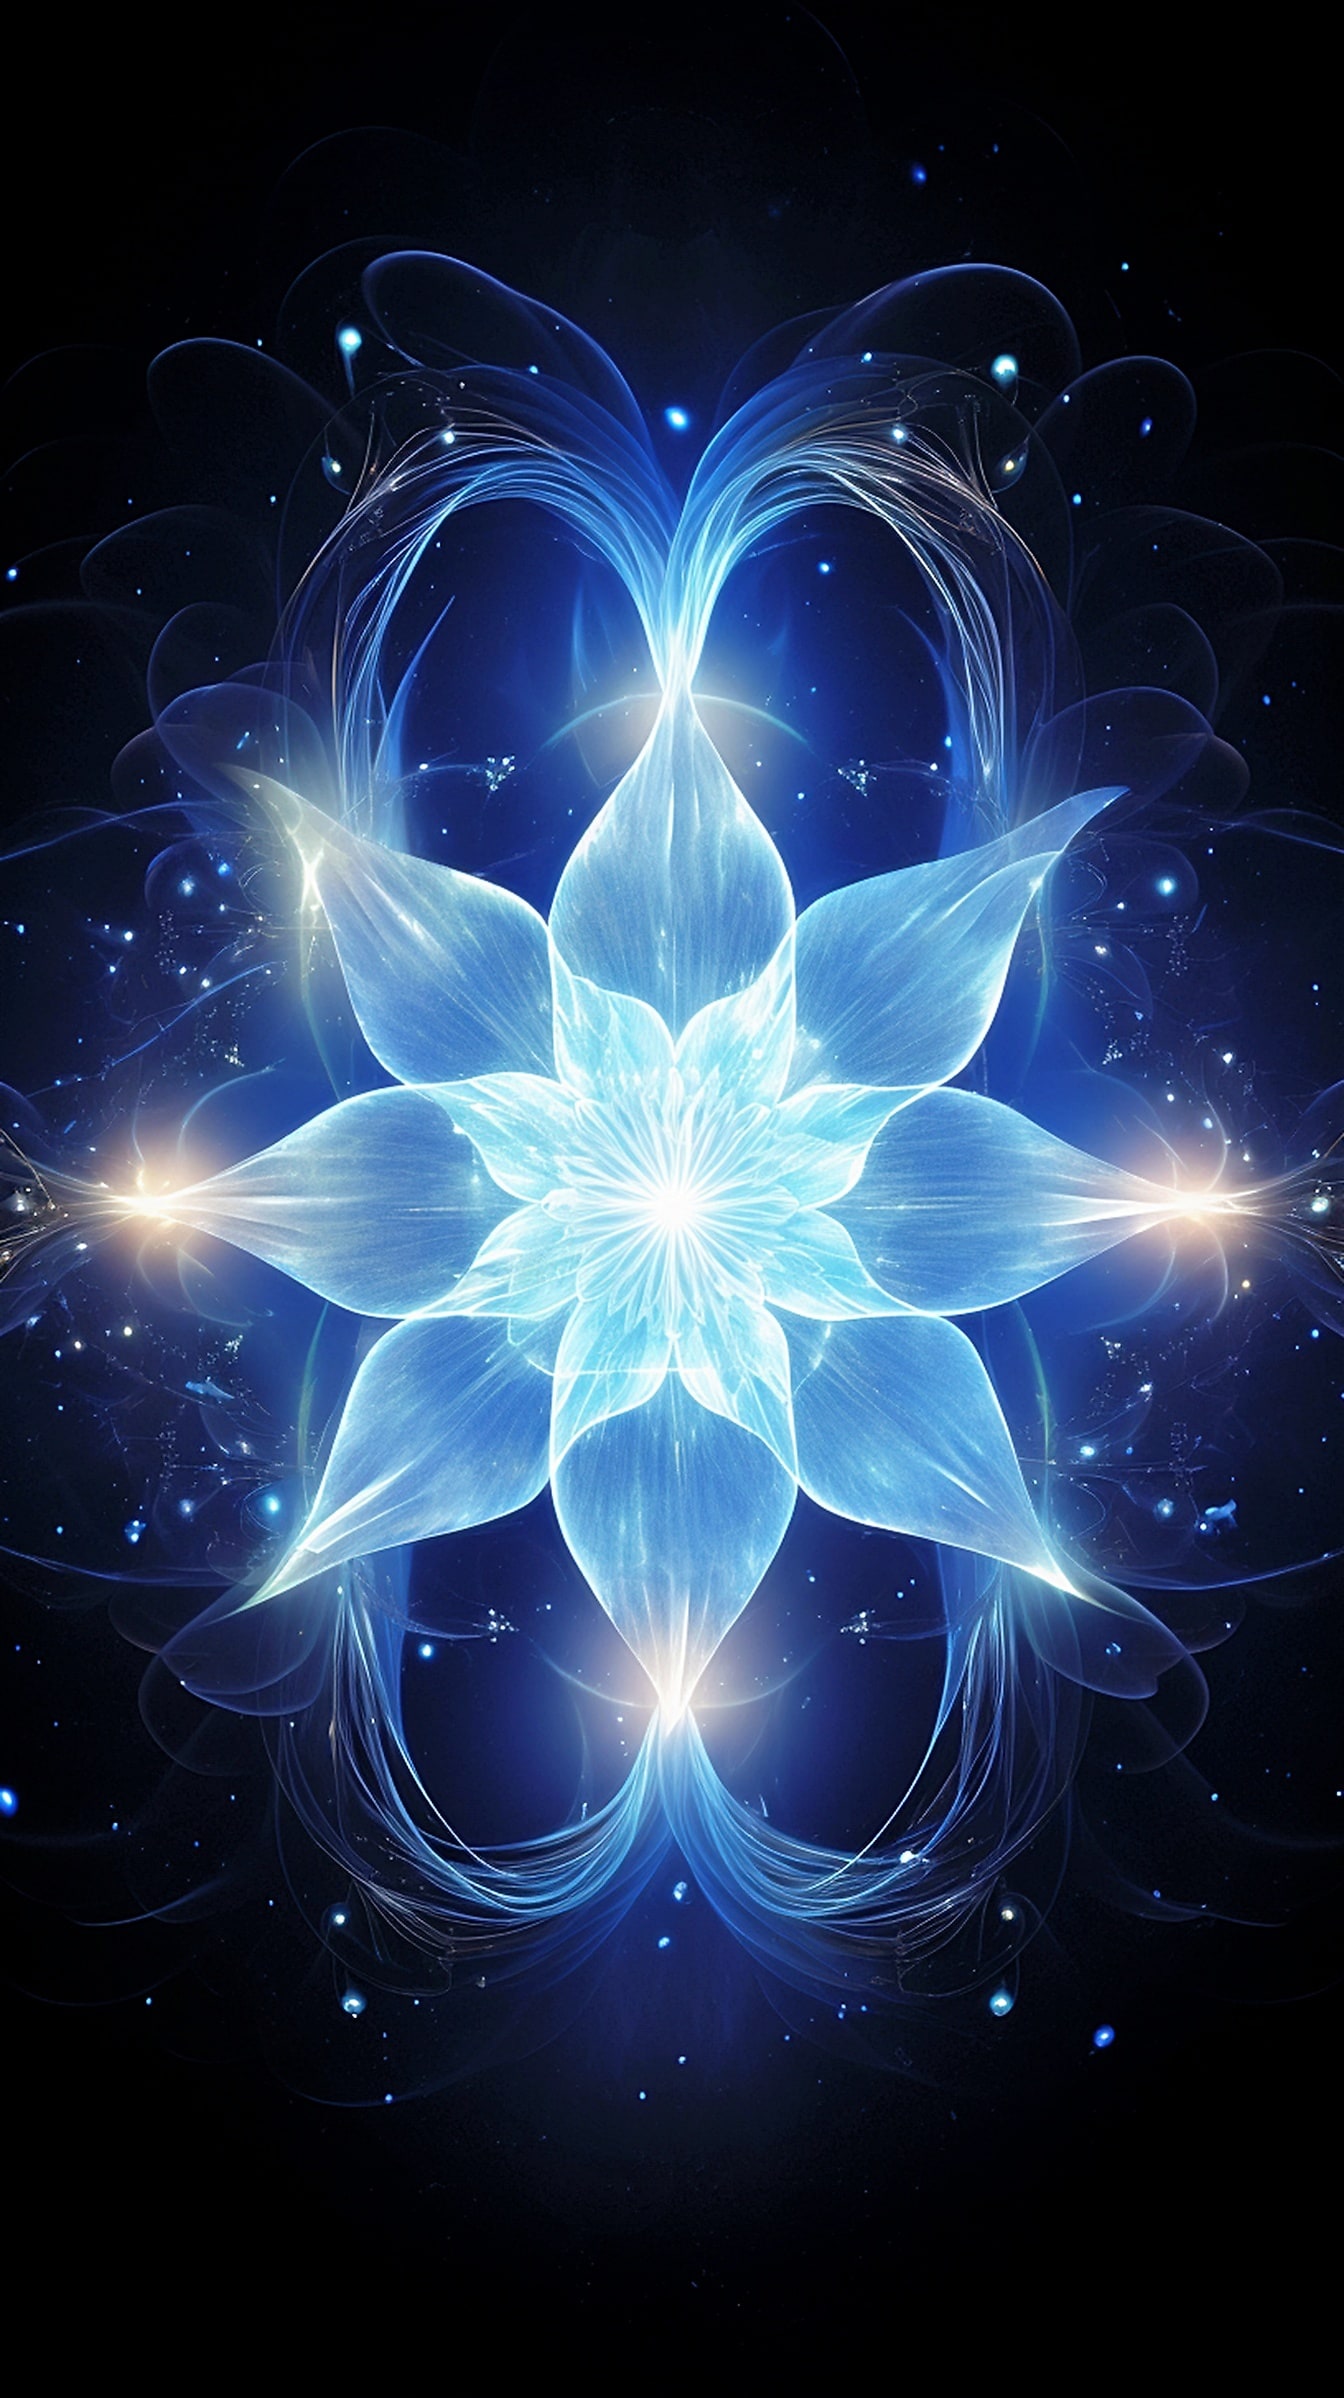 Ilustrație suprarealistă a unei flori albastre strălucitoare cu lumină albă pe fundal negru